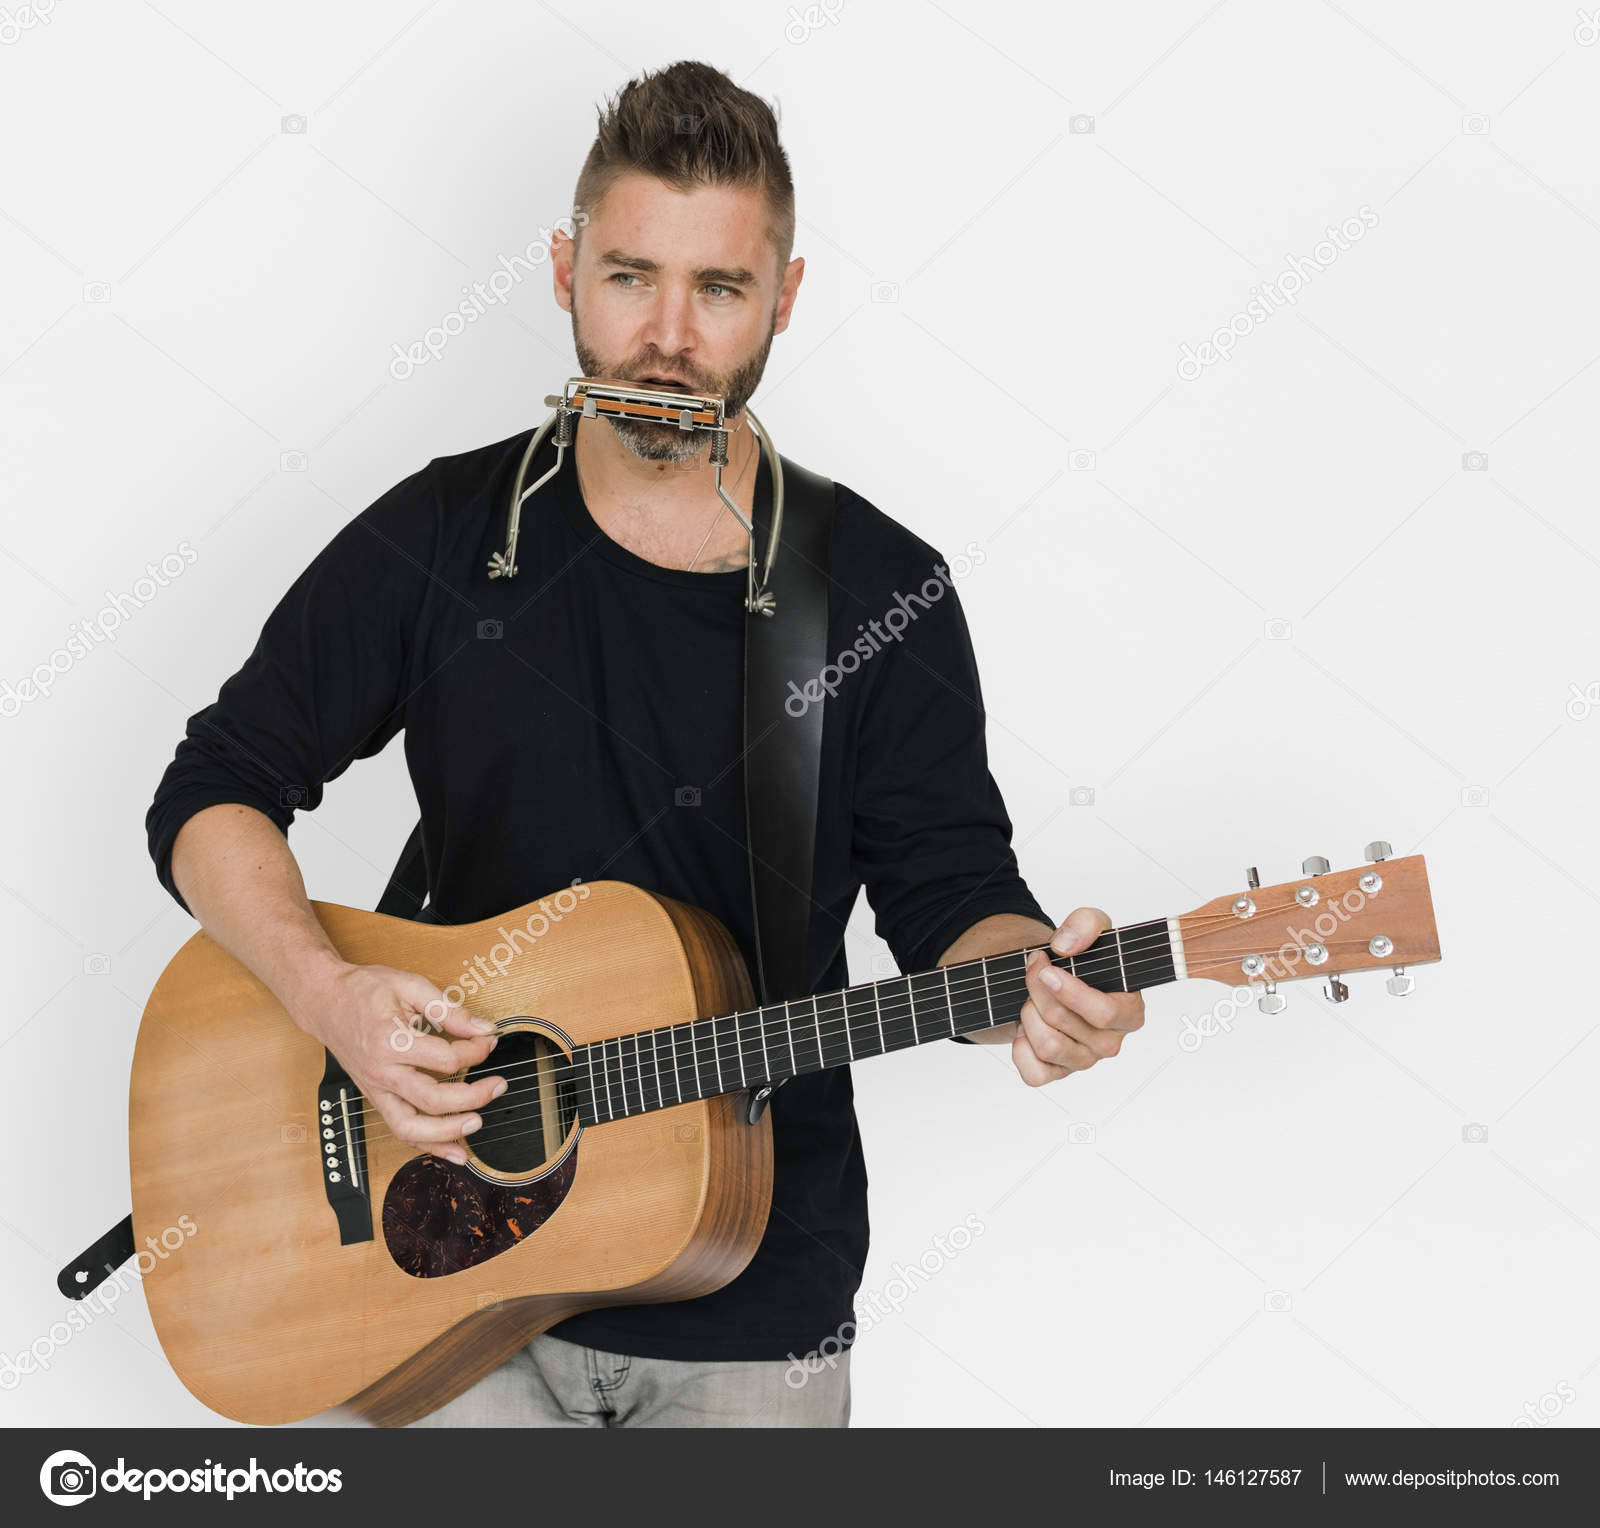 Man playing guitar photo